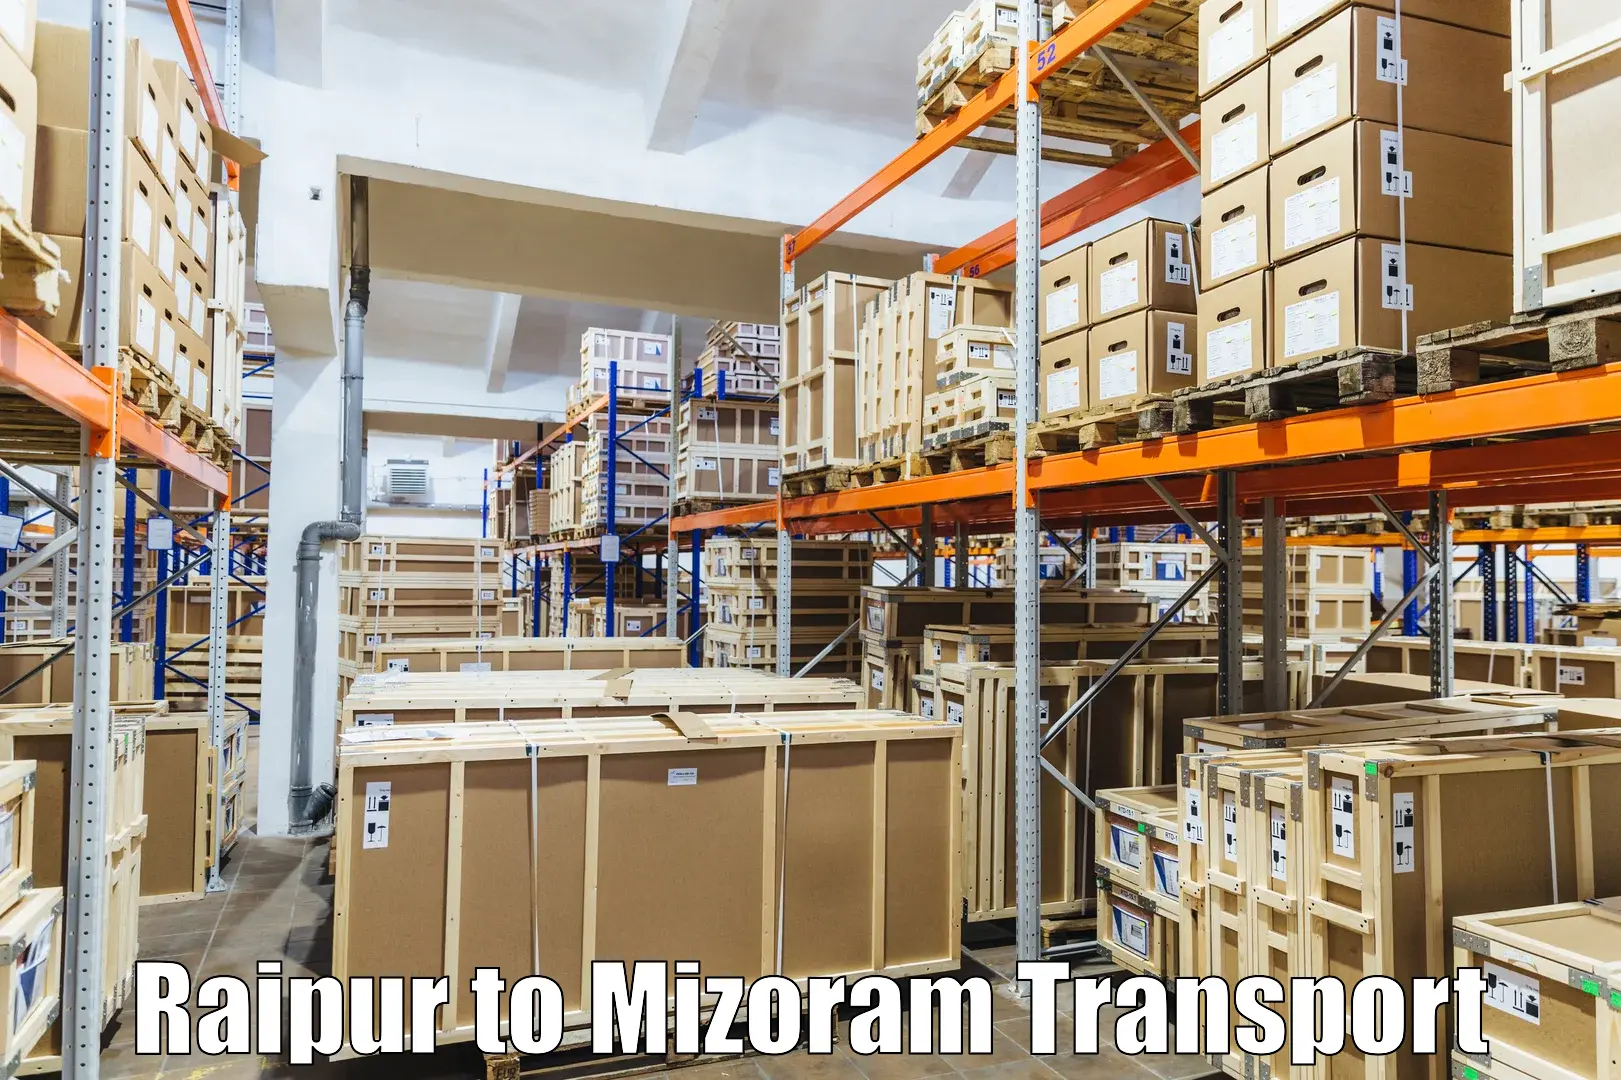 Daily transport service Raipur to Mizoram